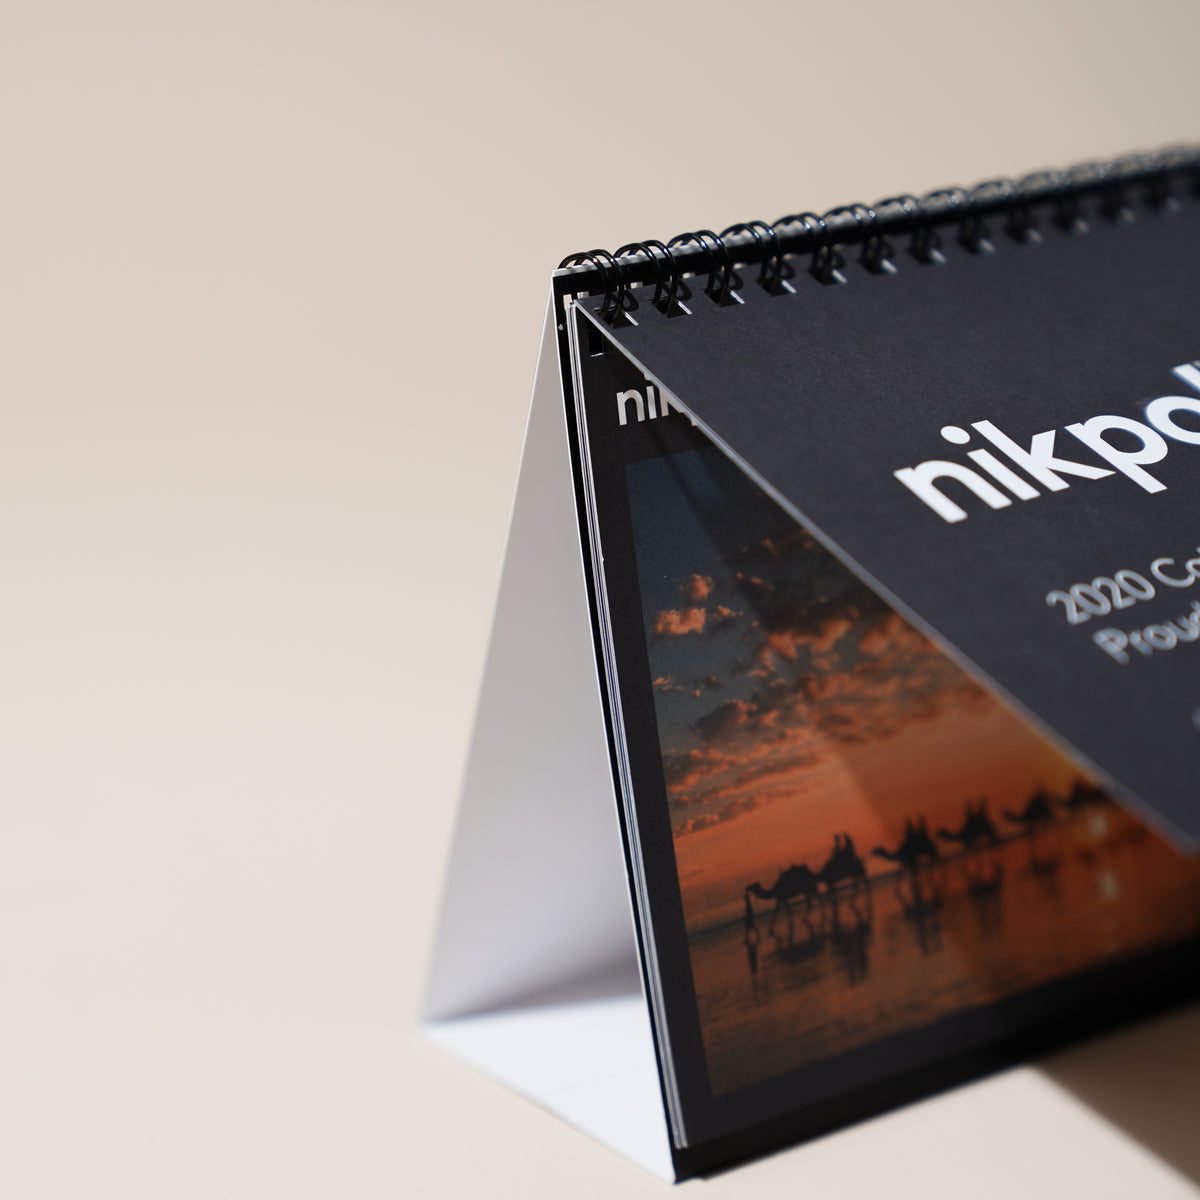 Desktop Flip Calendar